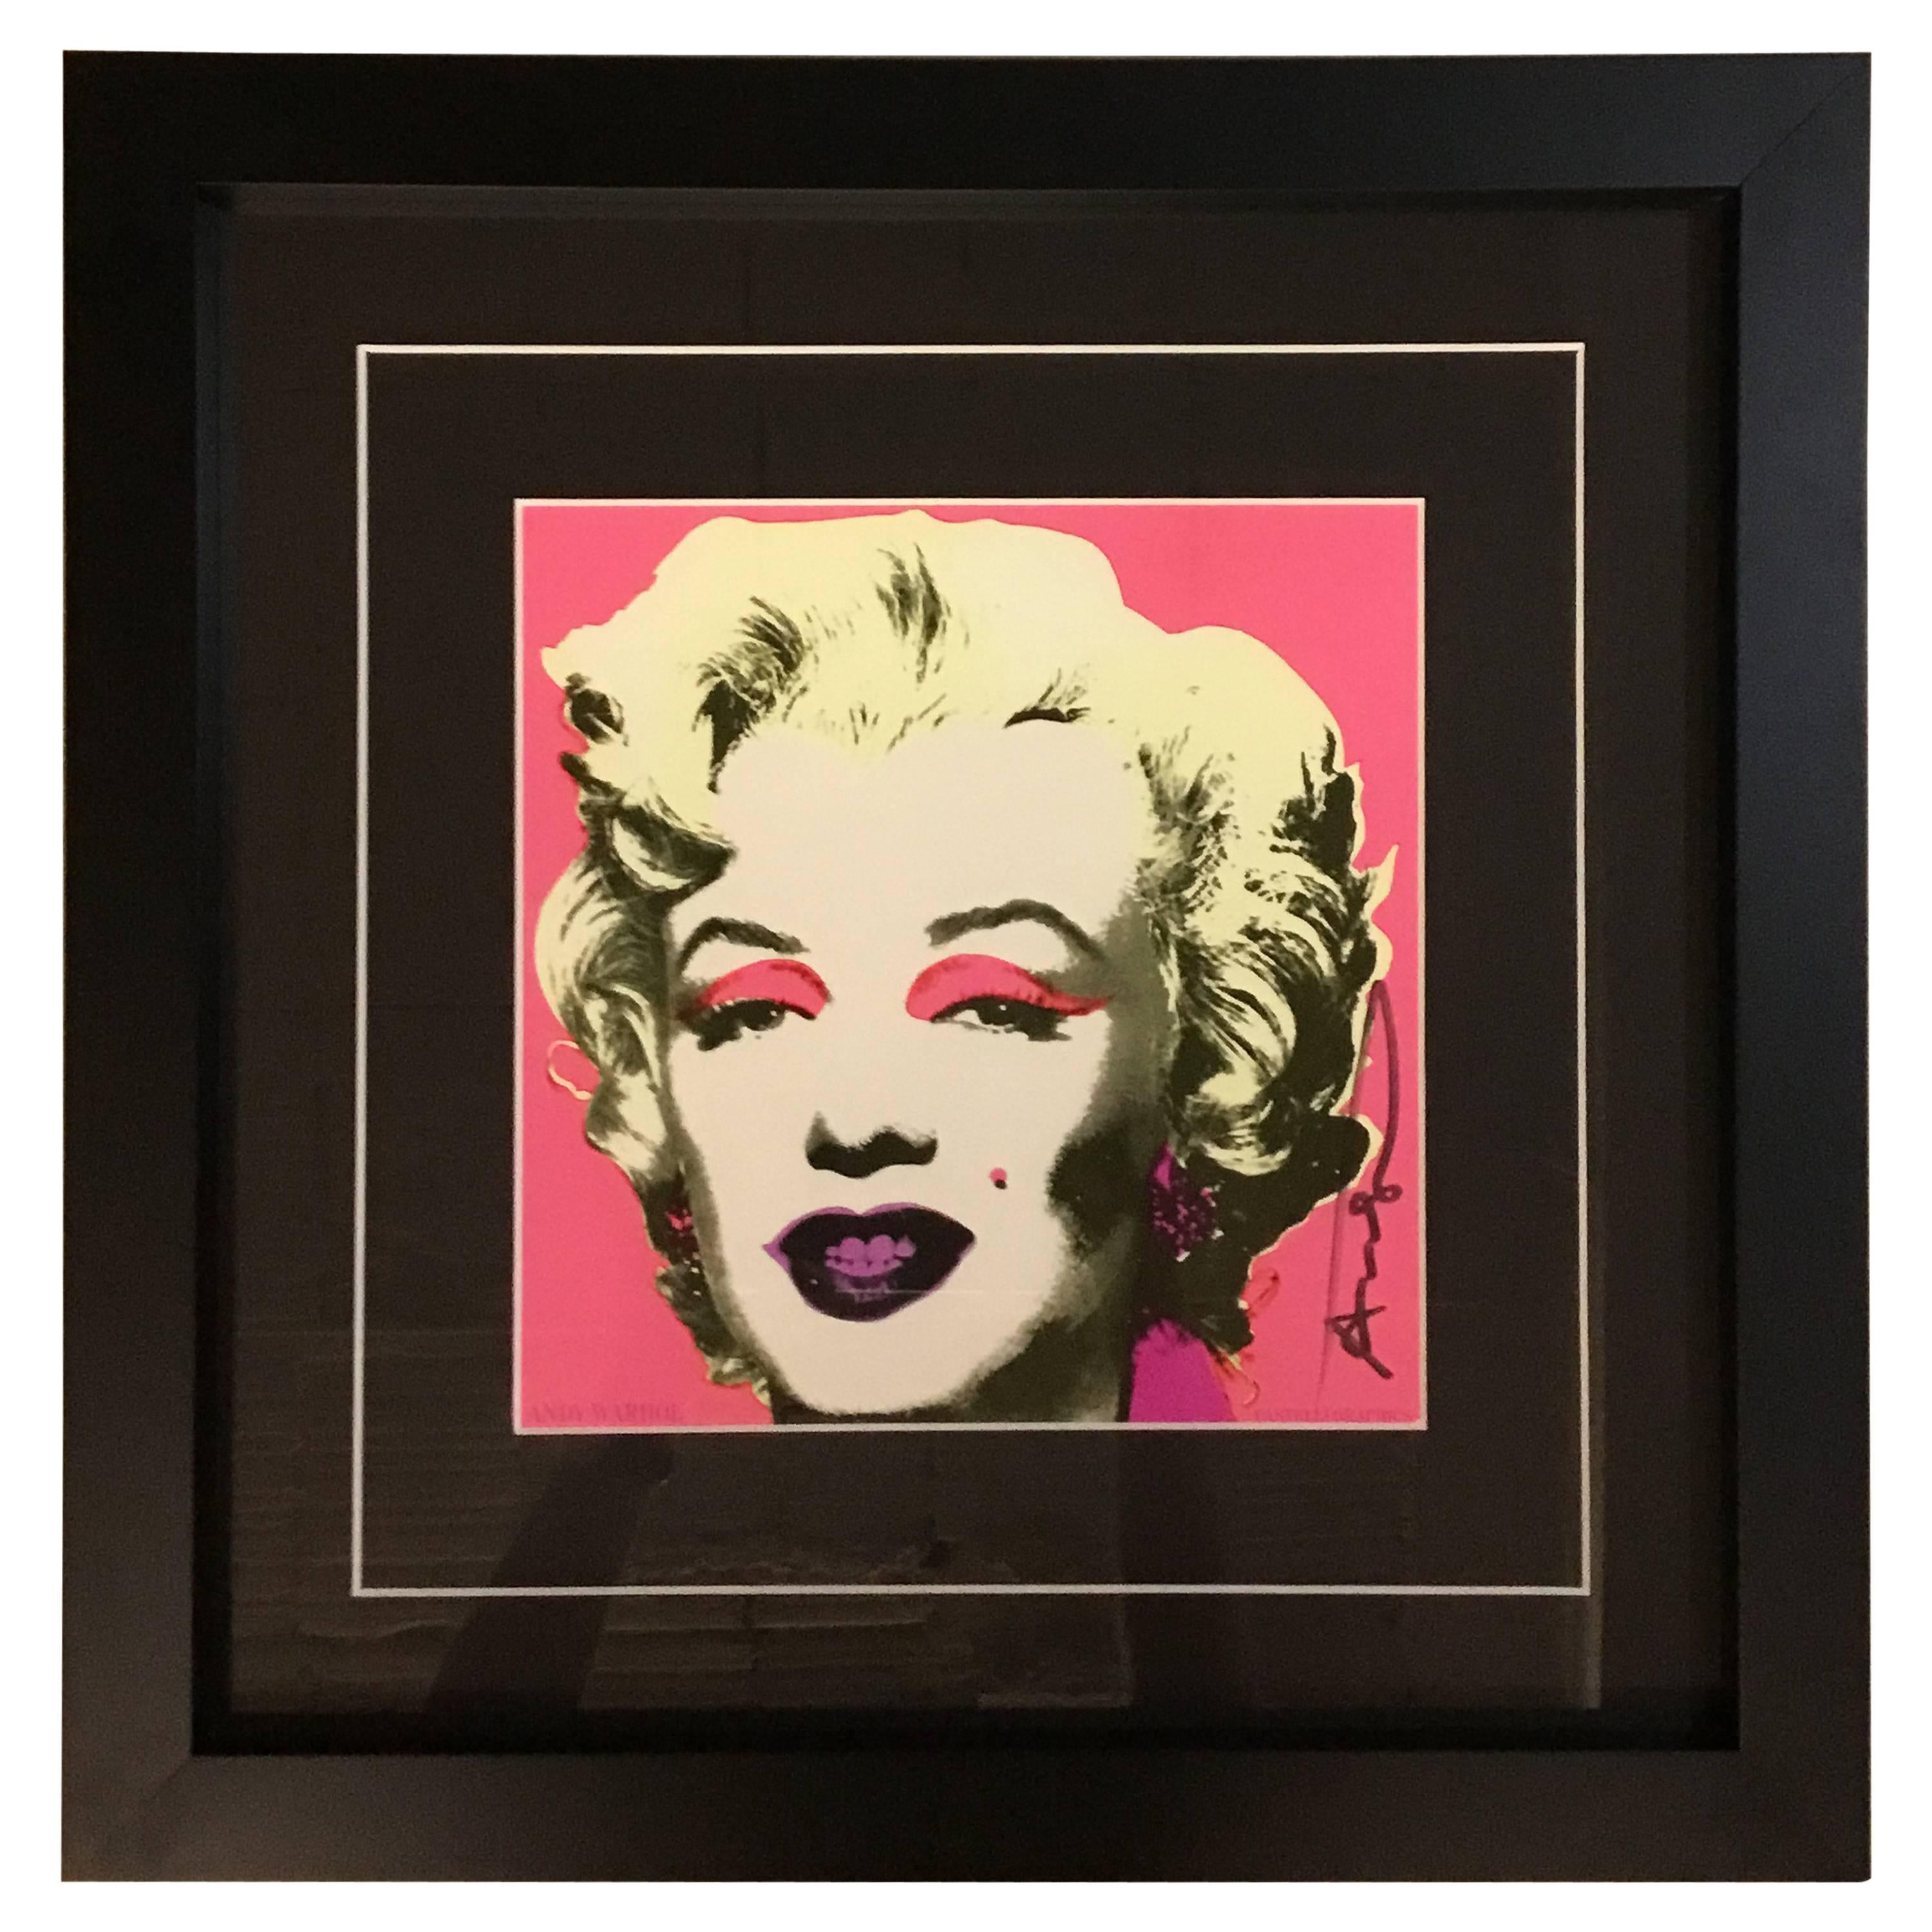 Andy Warhol, Marilyn Monroe, 'Leo Castelli' gallery invitation, 1981